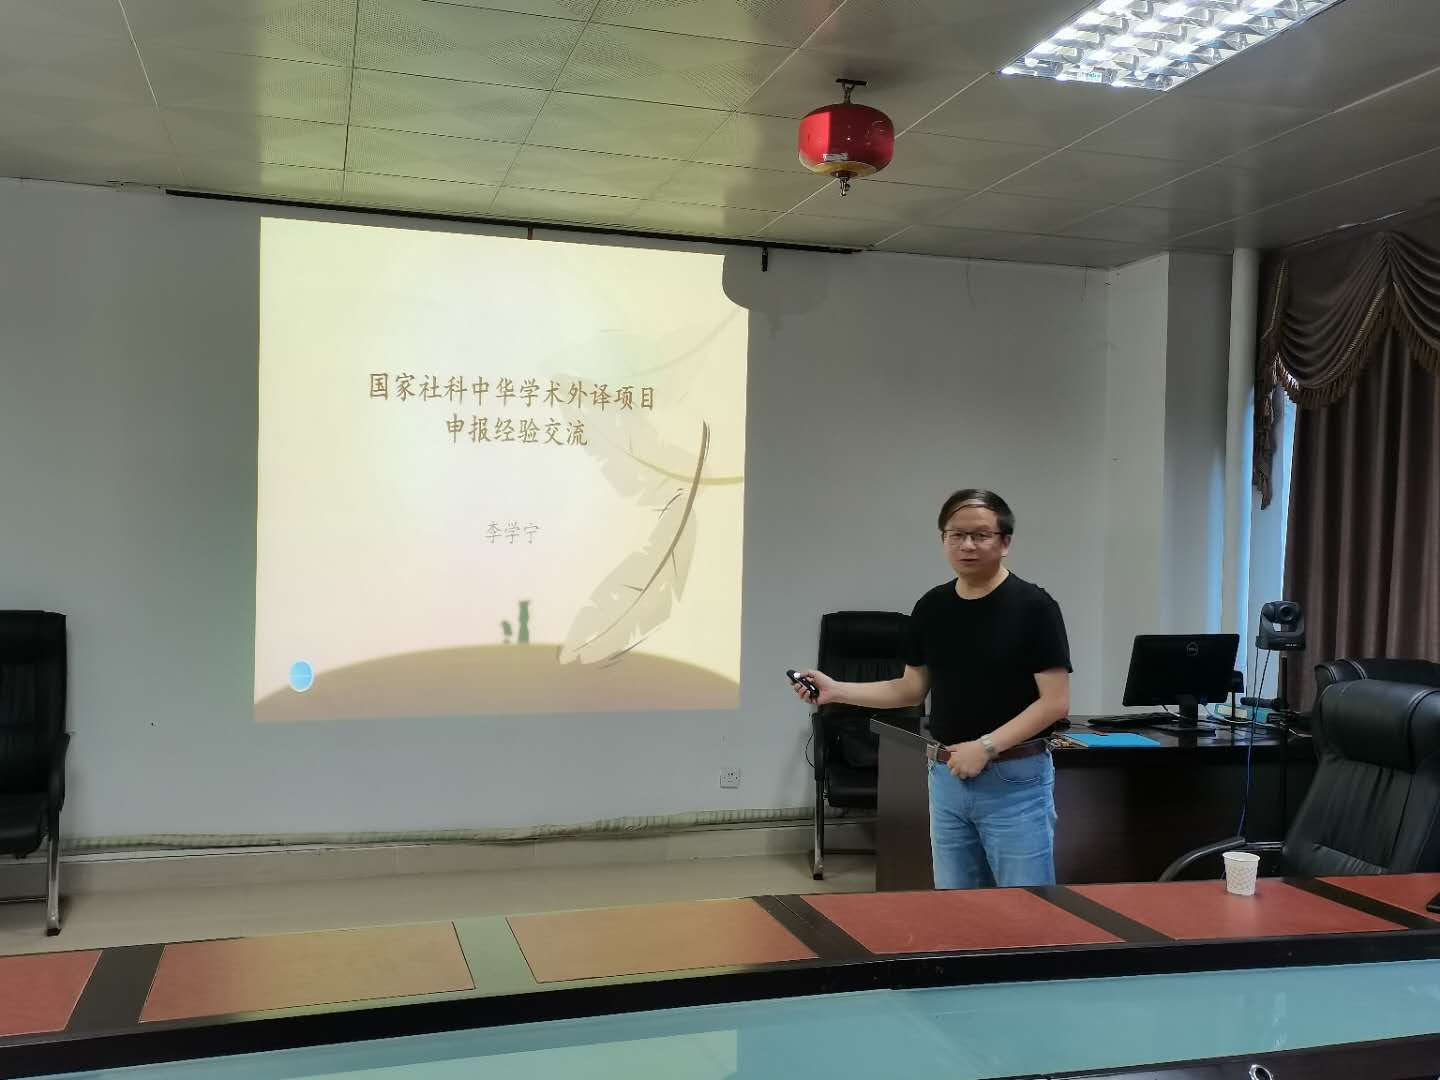 教育部中華學術外譯項目評審專家、廣西民族大學李學寧教授到我校講學